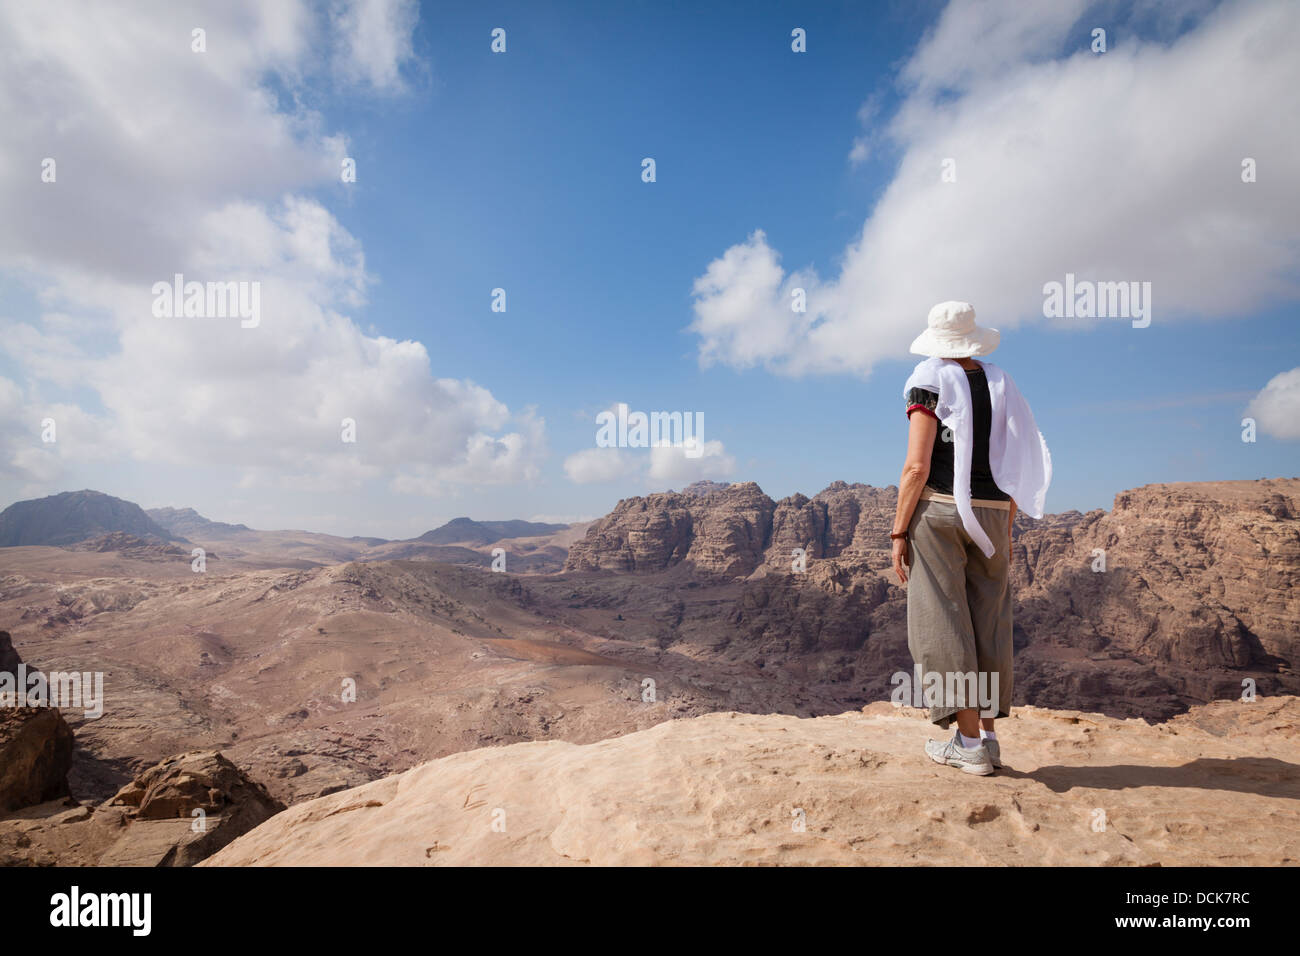 La donna è ammirando una vista del deserto giordano mentre escursionismo in Petra. Foto Stock